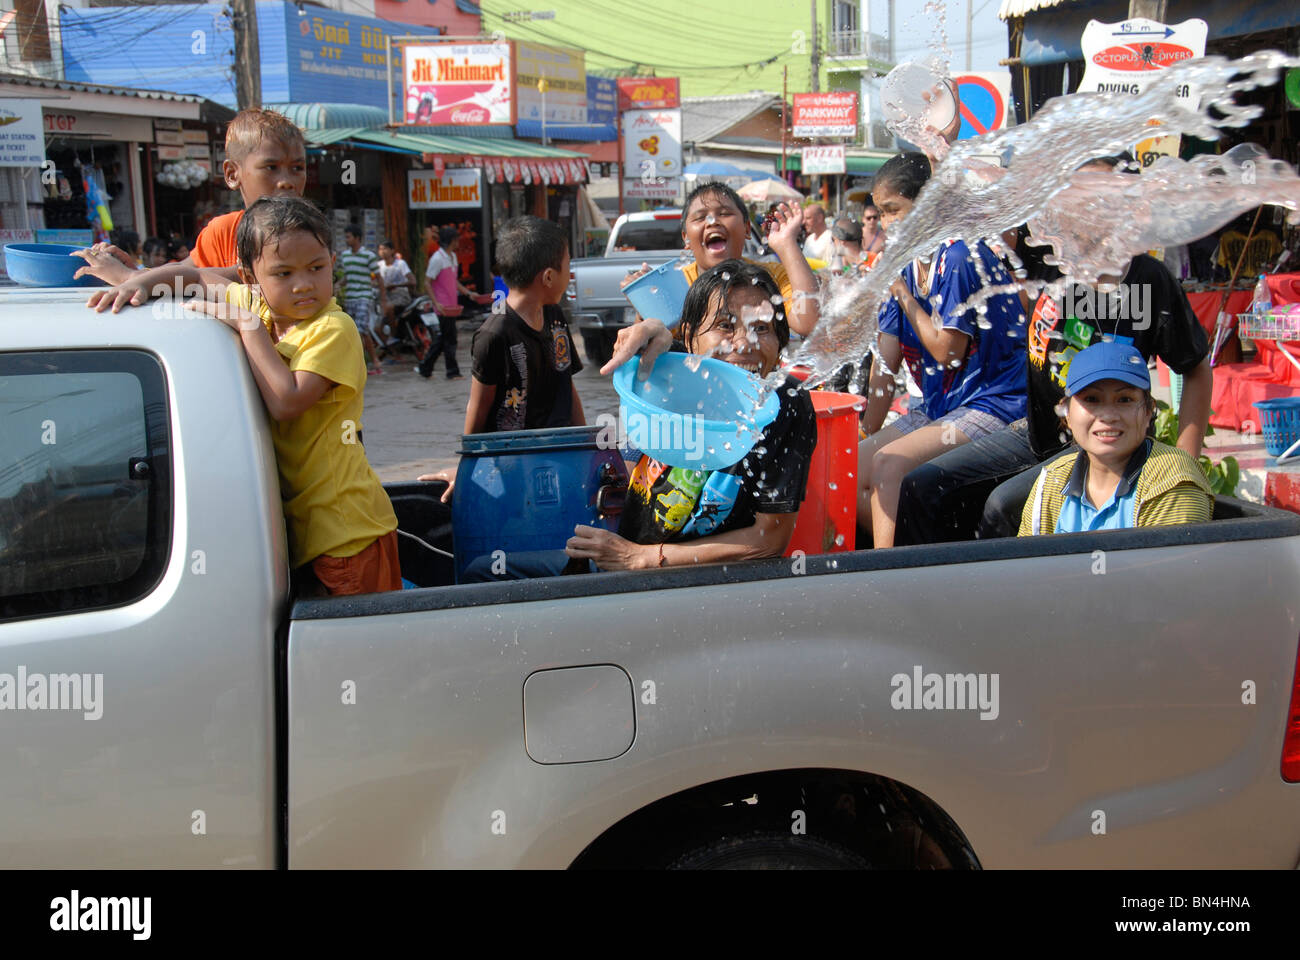 Les habitants et les touristes étrangers célébrer Songkran Nouvel An Thaï avec de l'eau se bat dans les rues de Koh Lanta Thaïlande du sud Banque D'Images